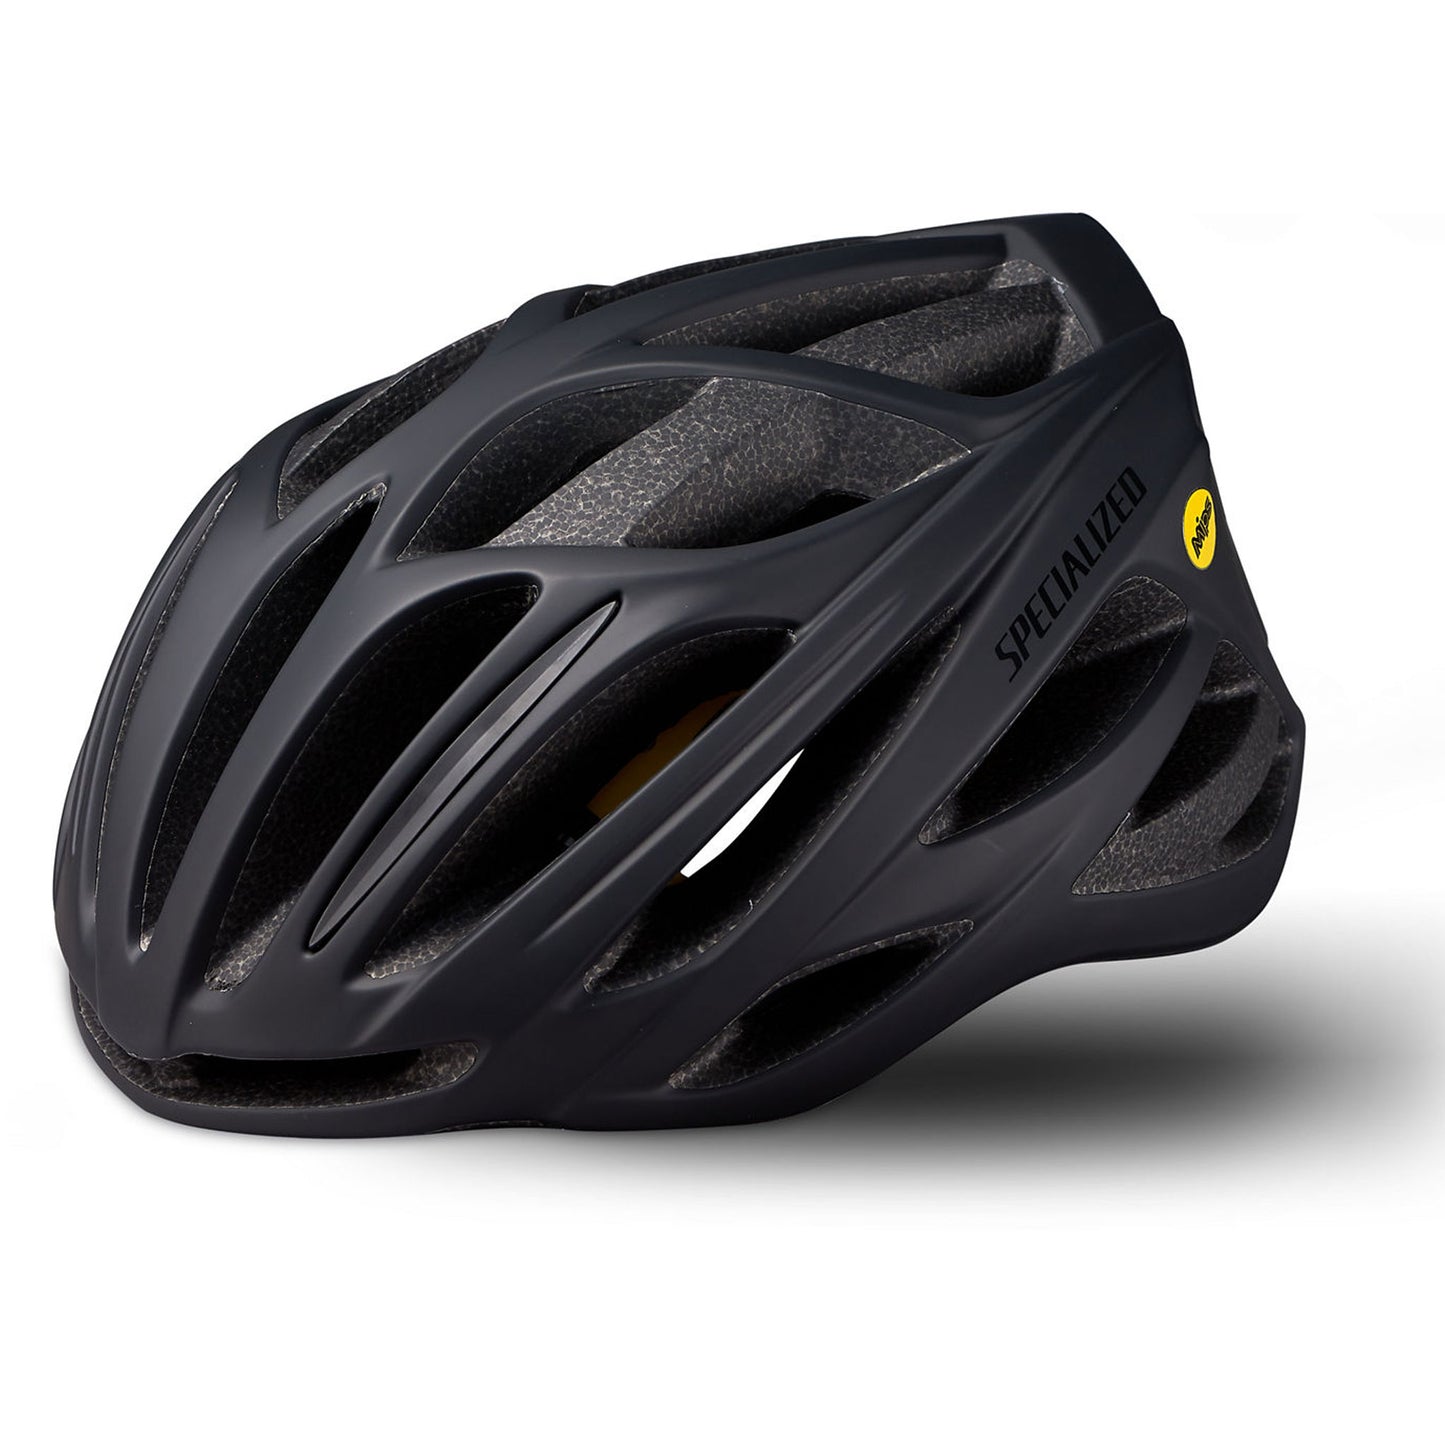 Specialized Echelon II Mips Road Cycling Helmet, Black